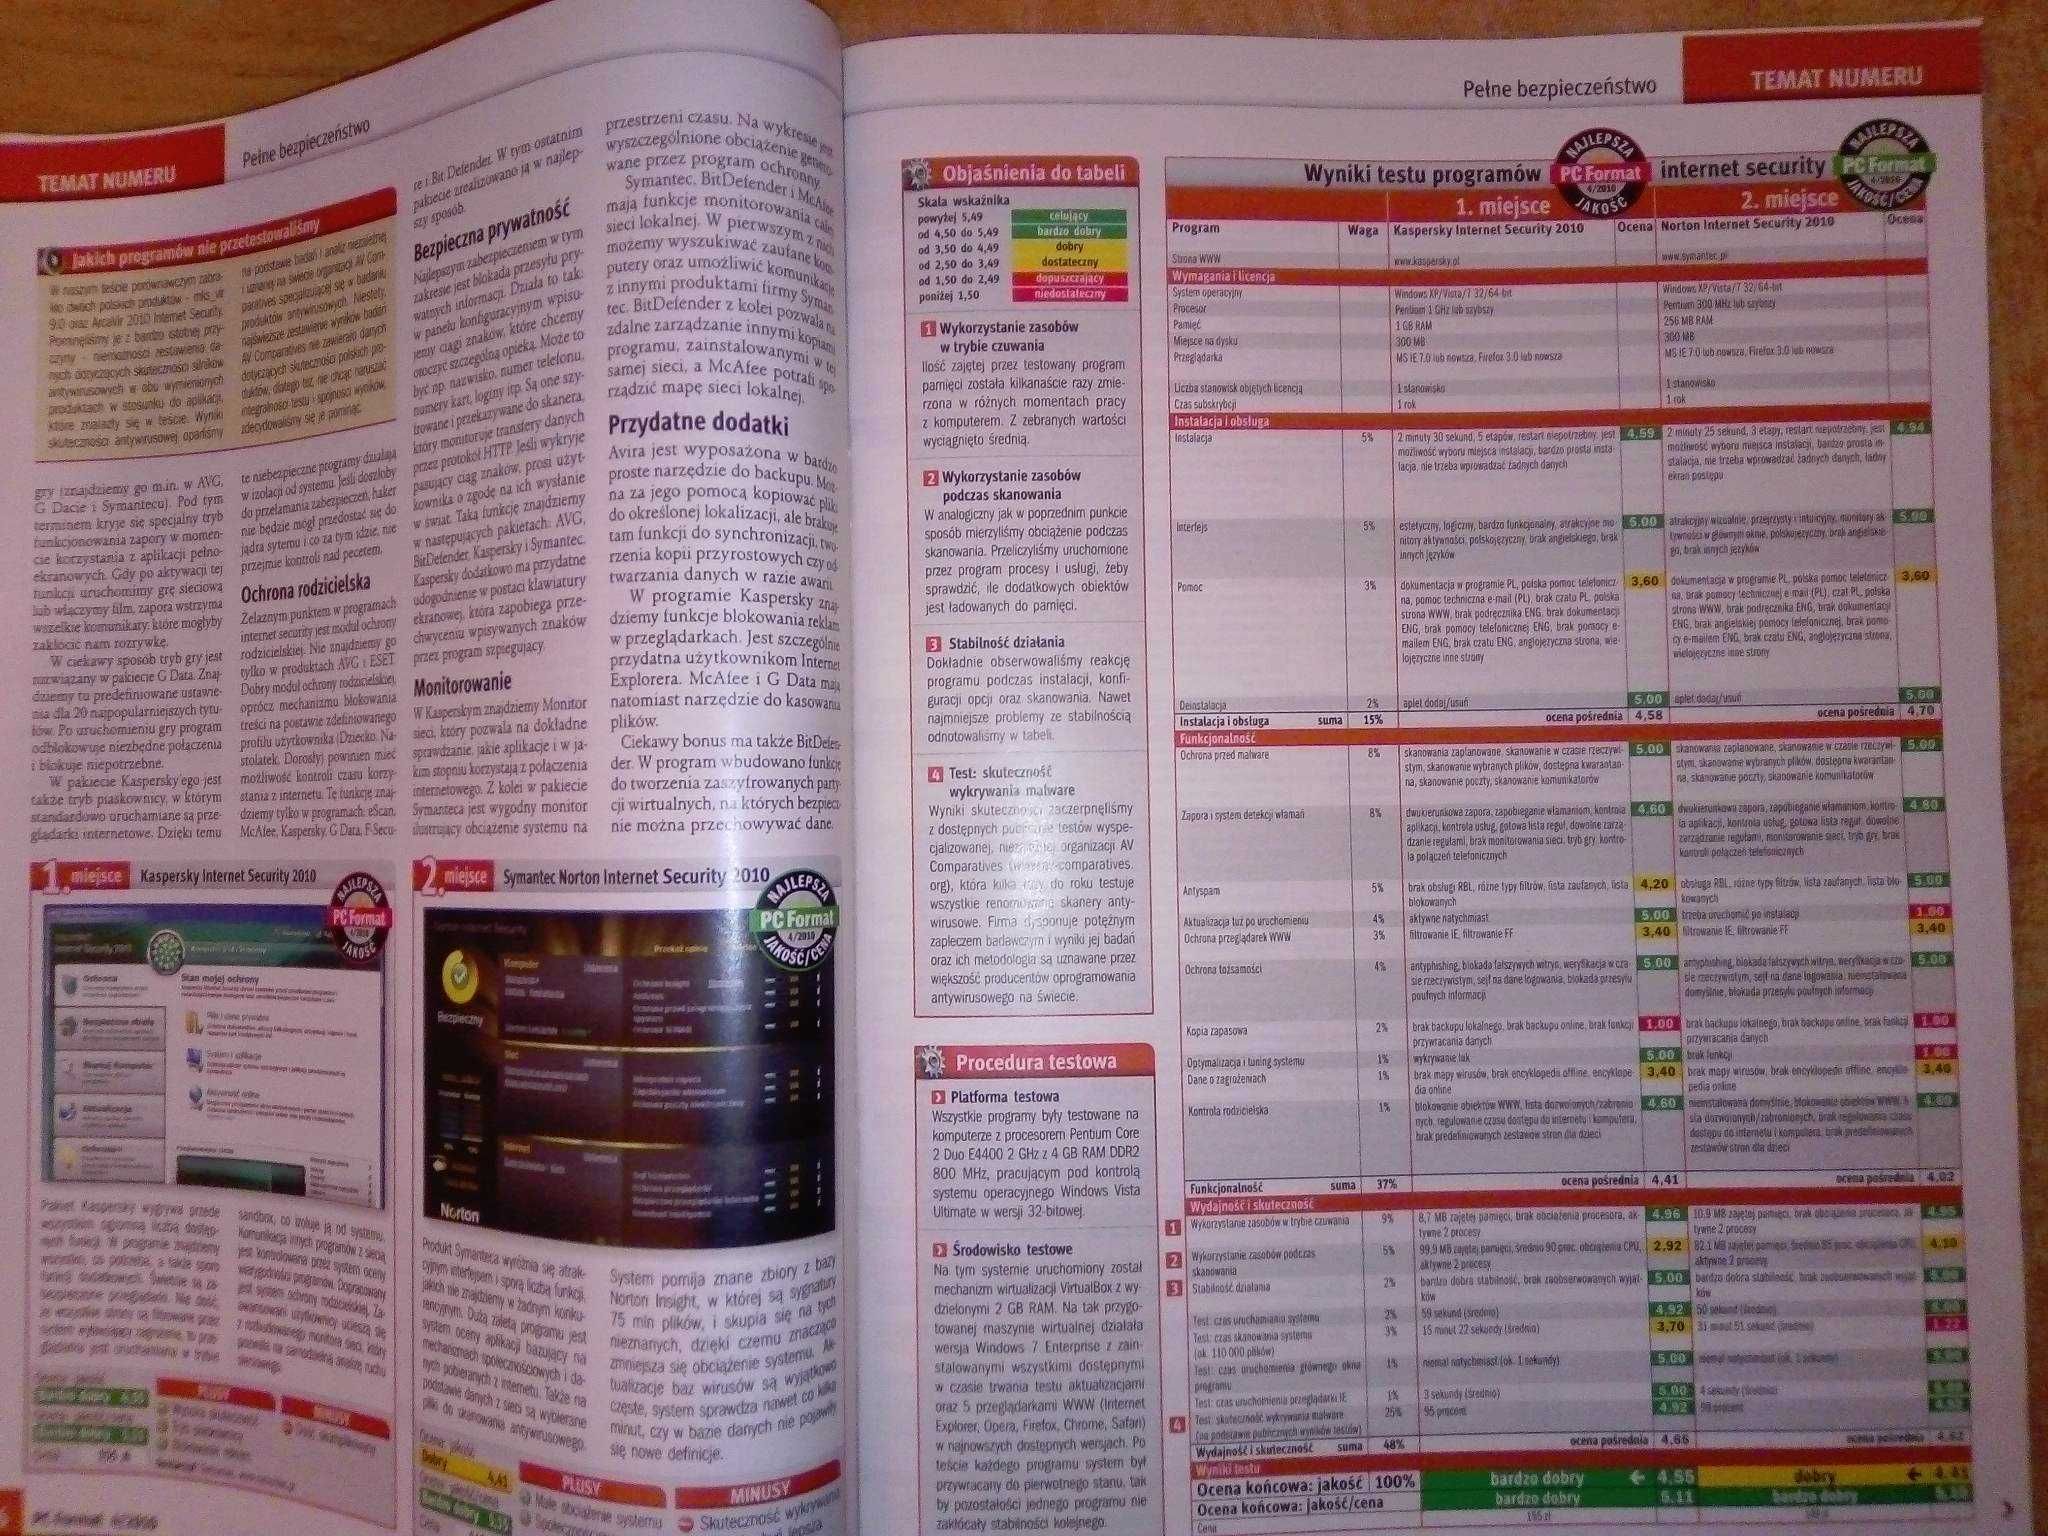 PC Format 4 2010 kwiecień (116) Gazeta + płyta CD Czasopismo